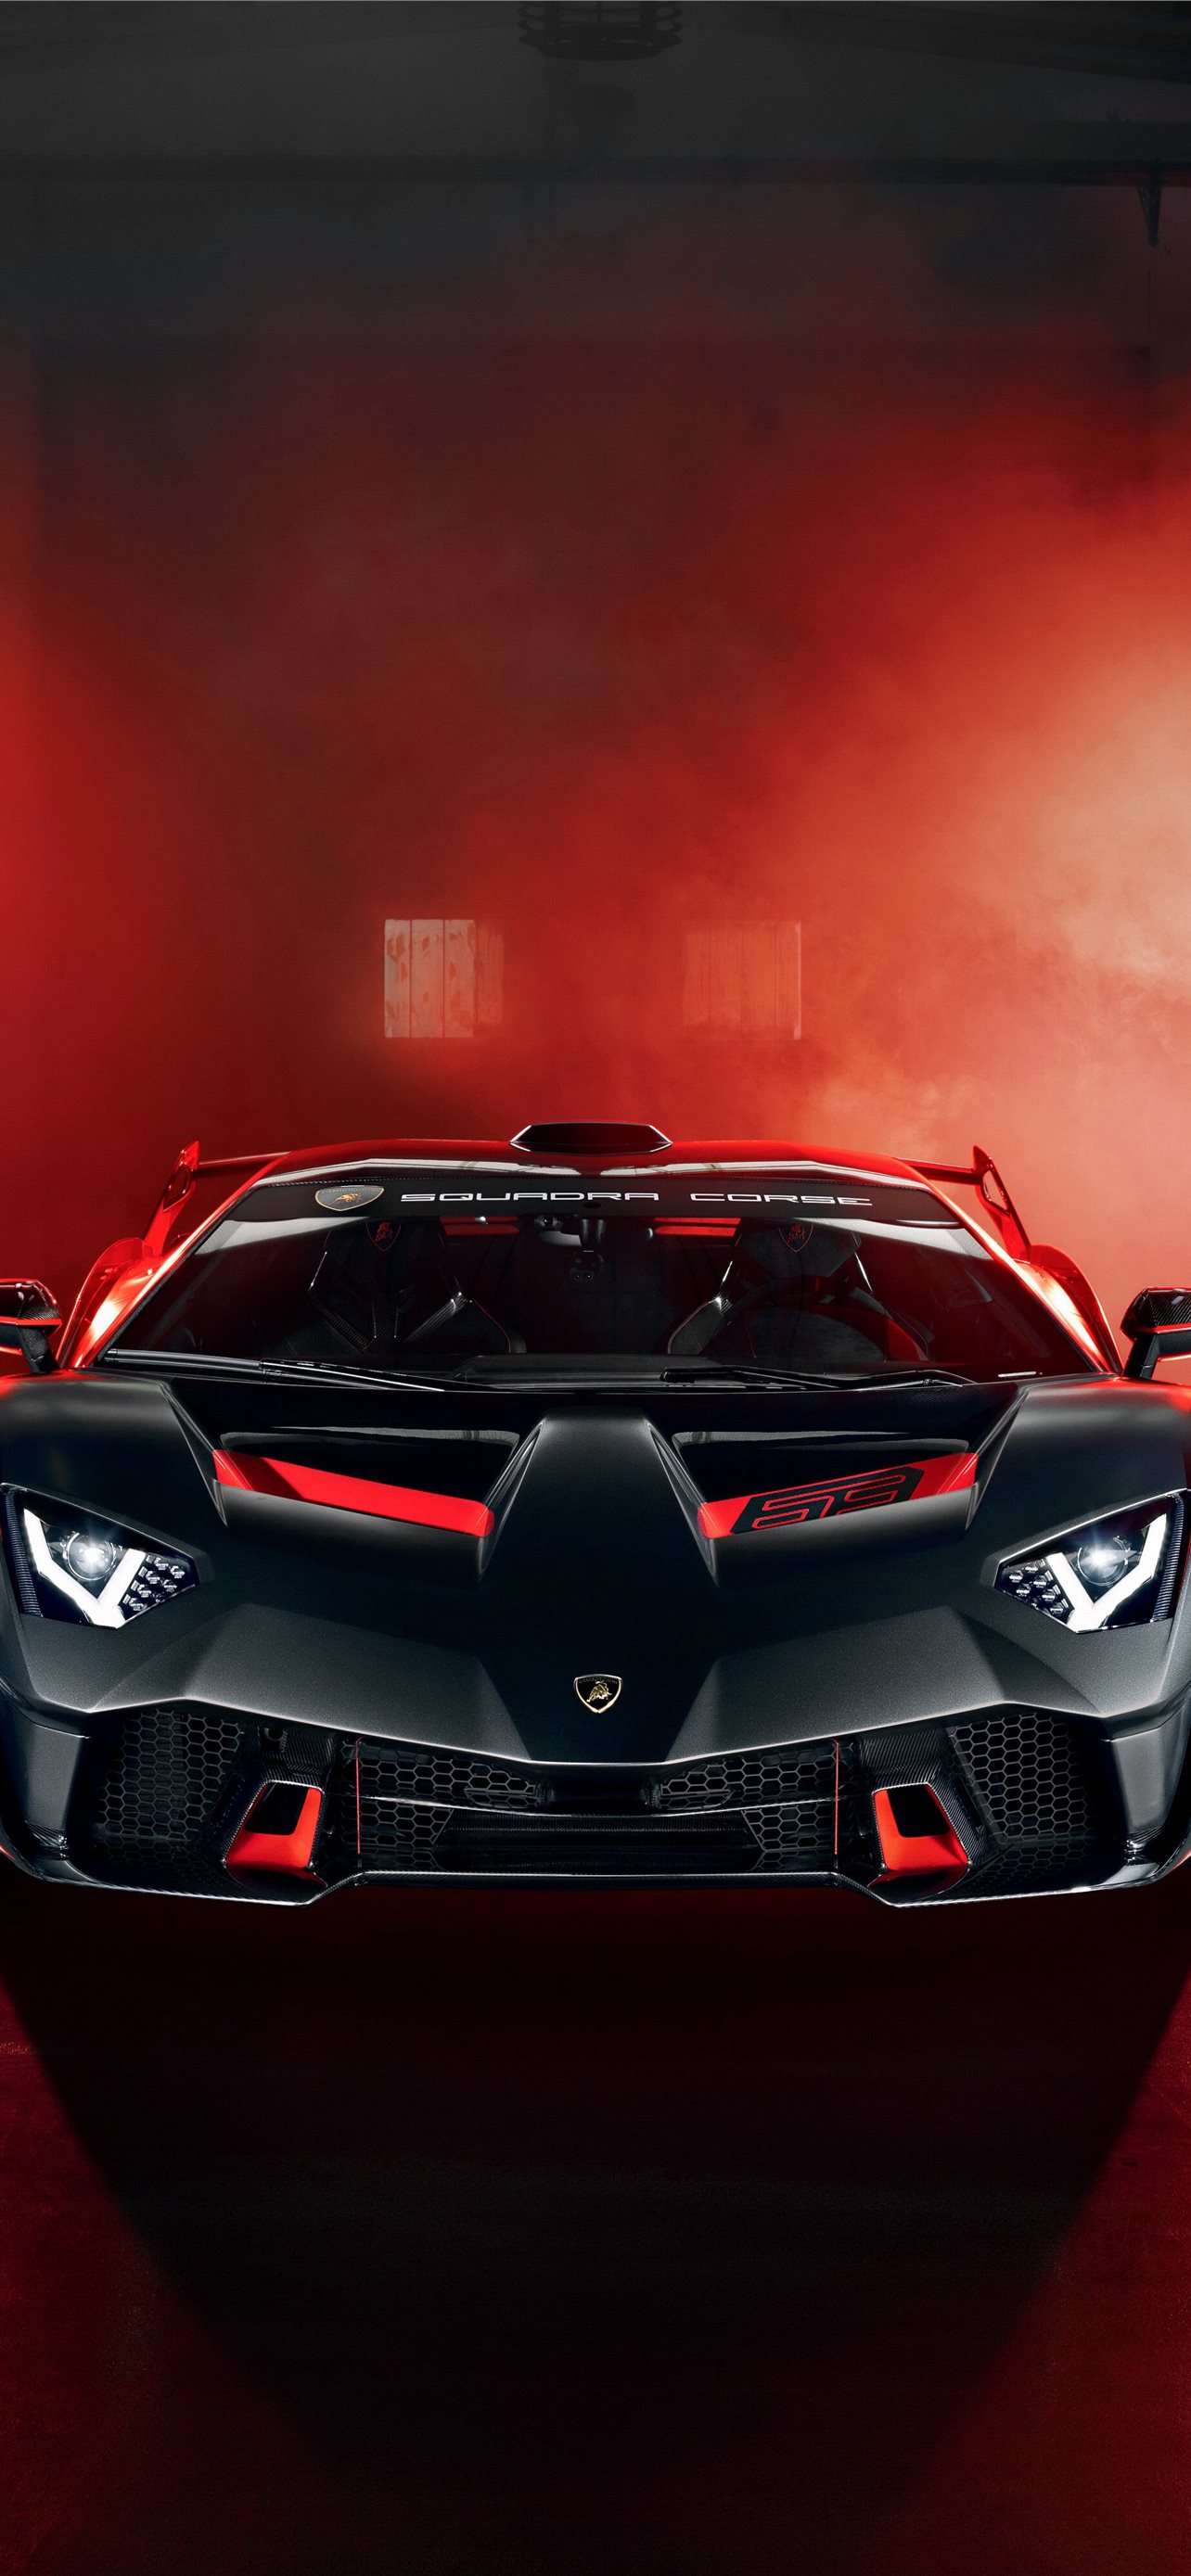 Những mẫu siêu xe làm nên tên tuổi cho thương hiệu Lamborghini